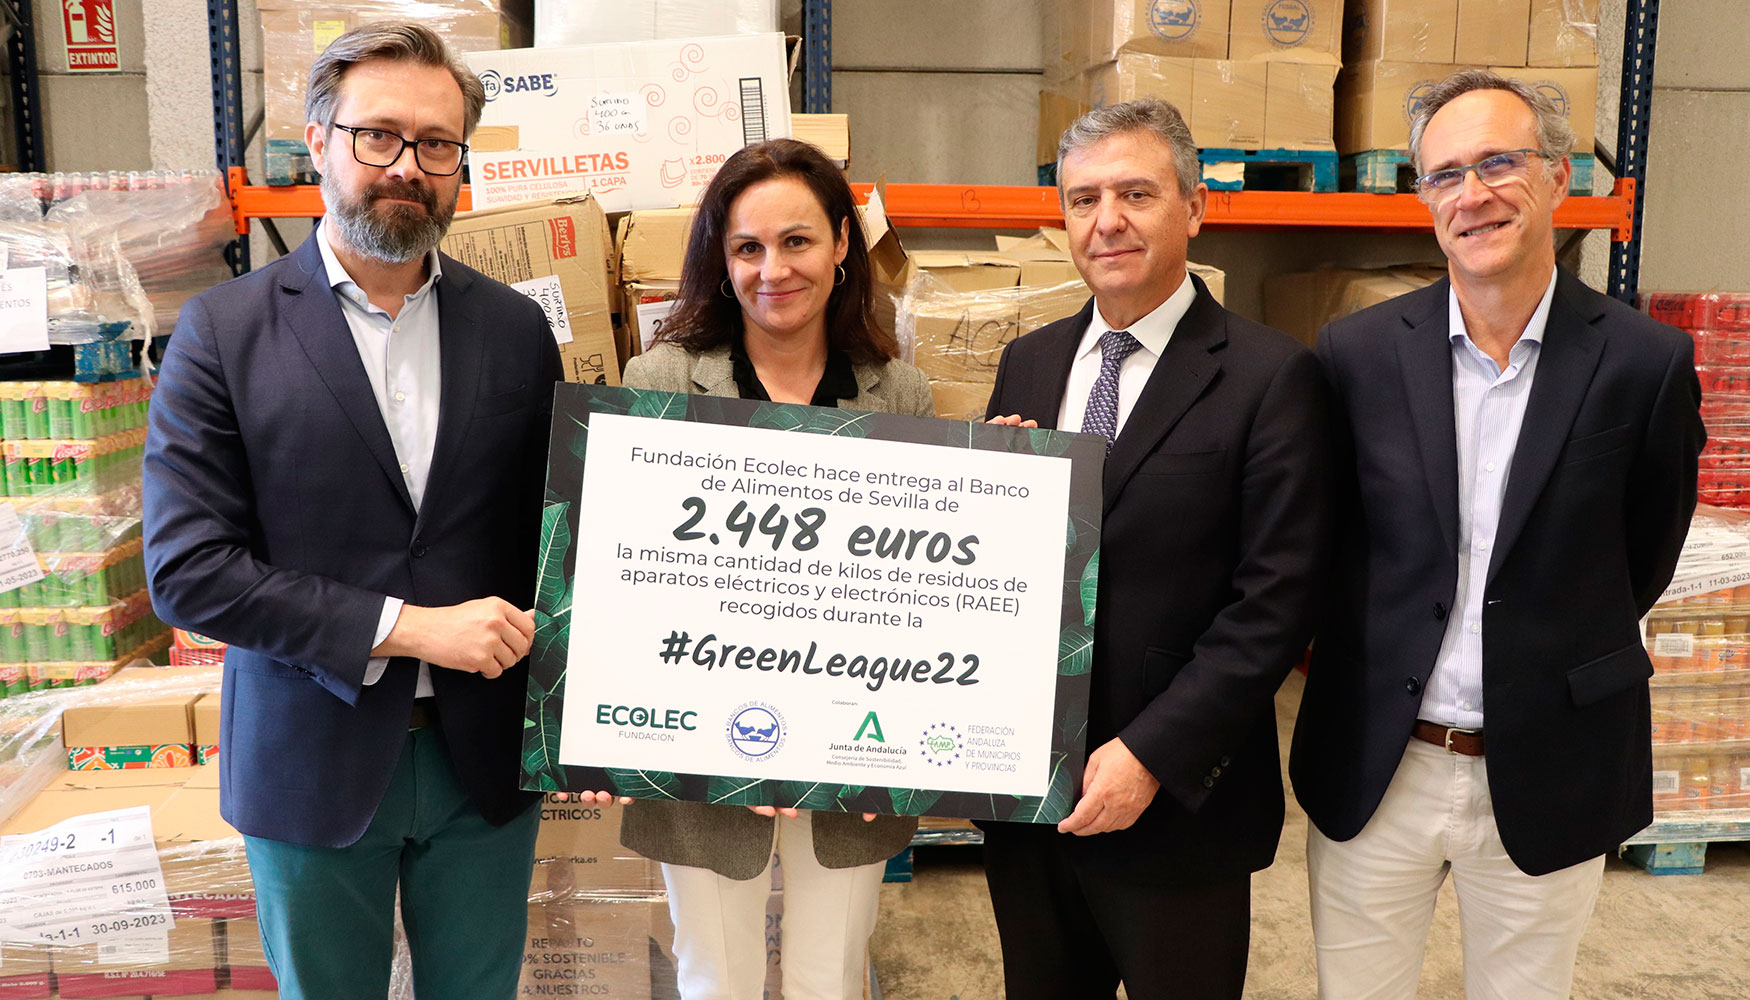 Momento de la entrega del cheque por valor de 2.448 euros en las instalaciones del Banco de Alimentos de Sevilla